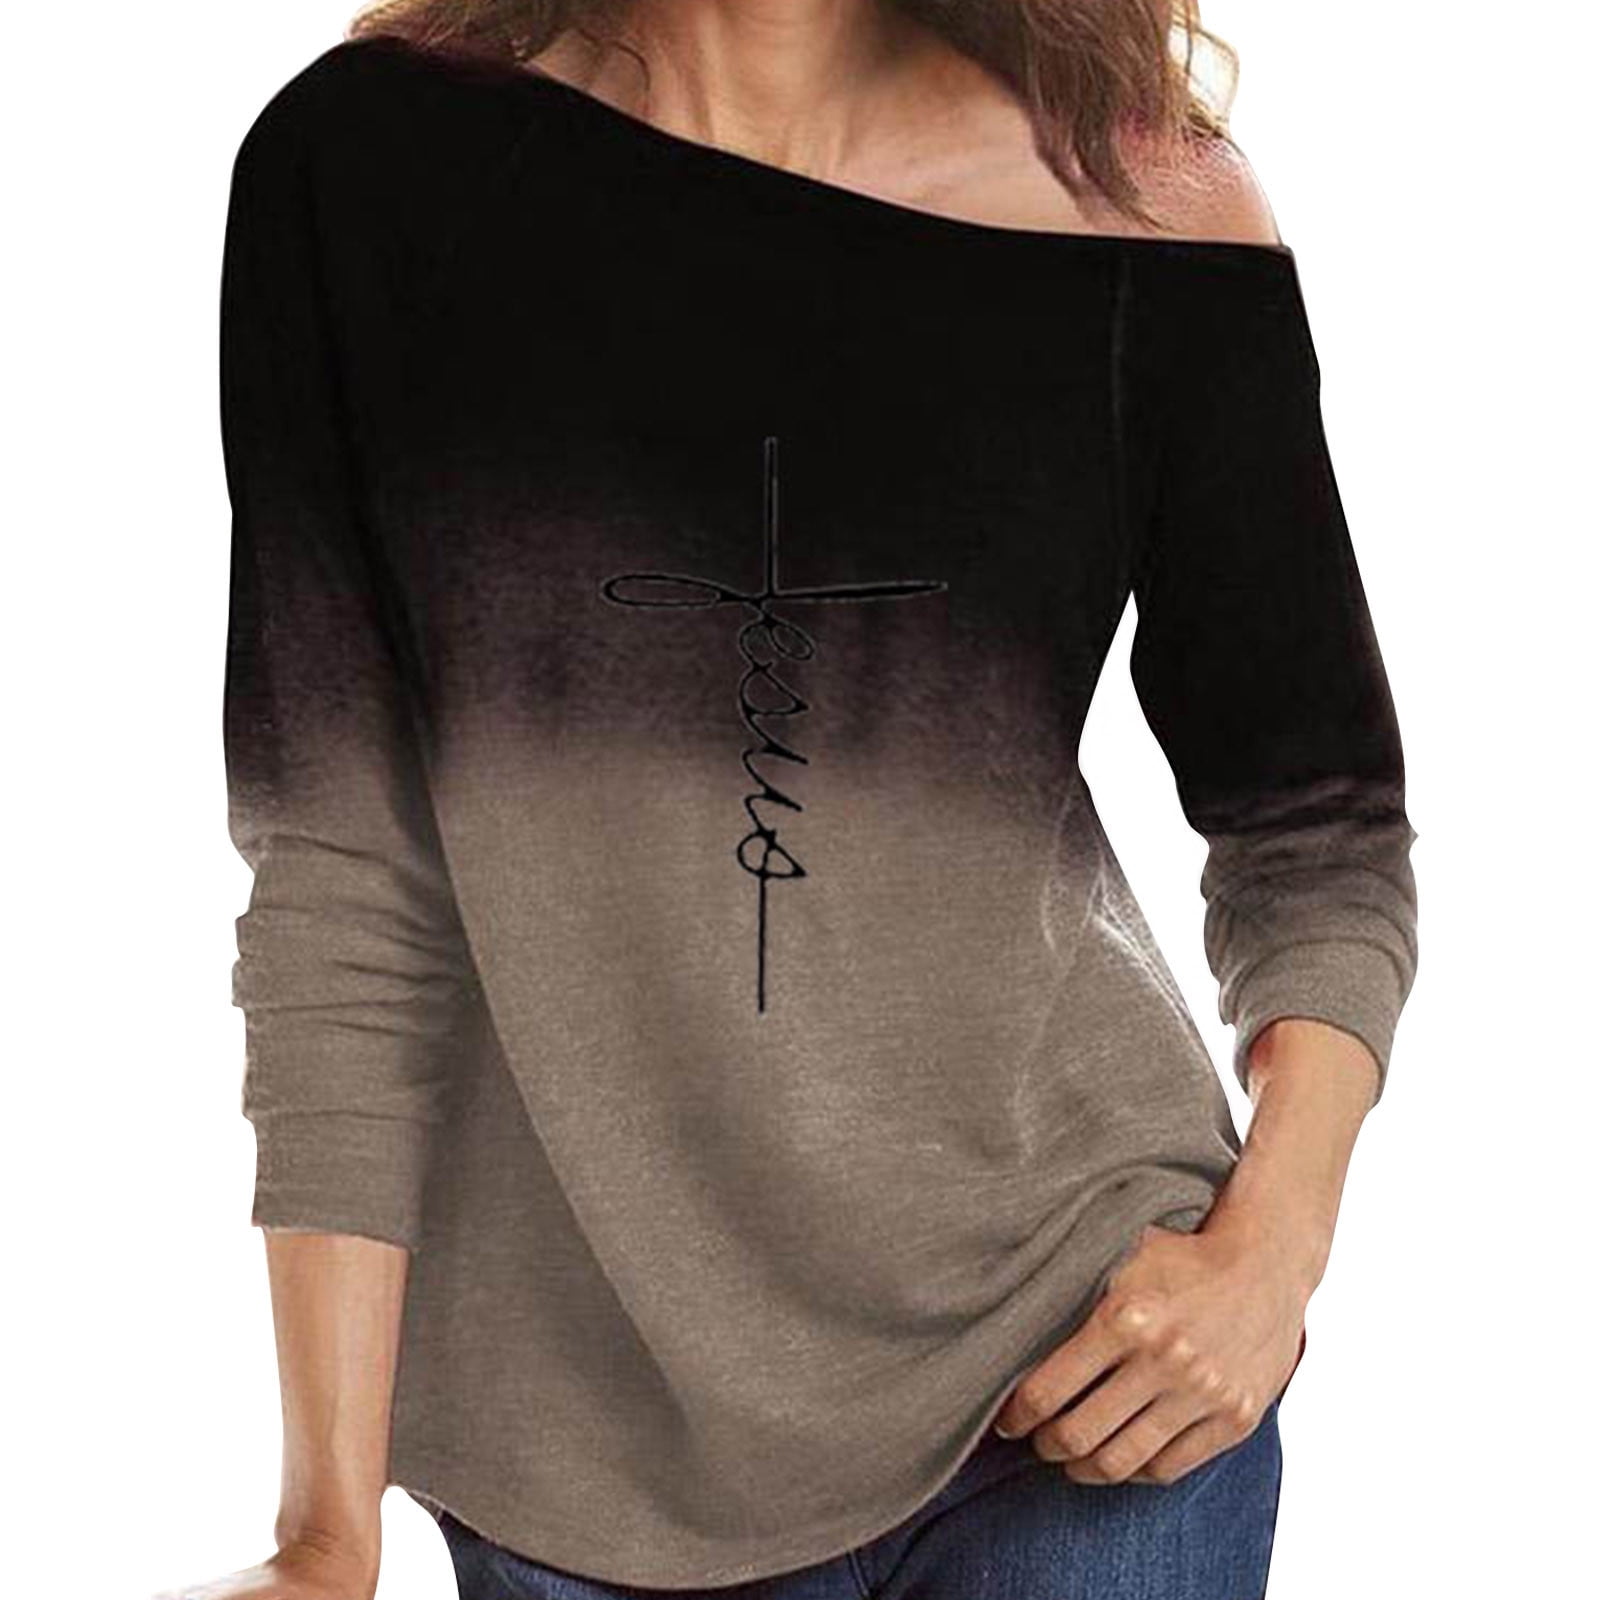 Tejiojio Sweaters For Women Plus Size Long Sleeve Shirts For Women